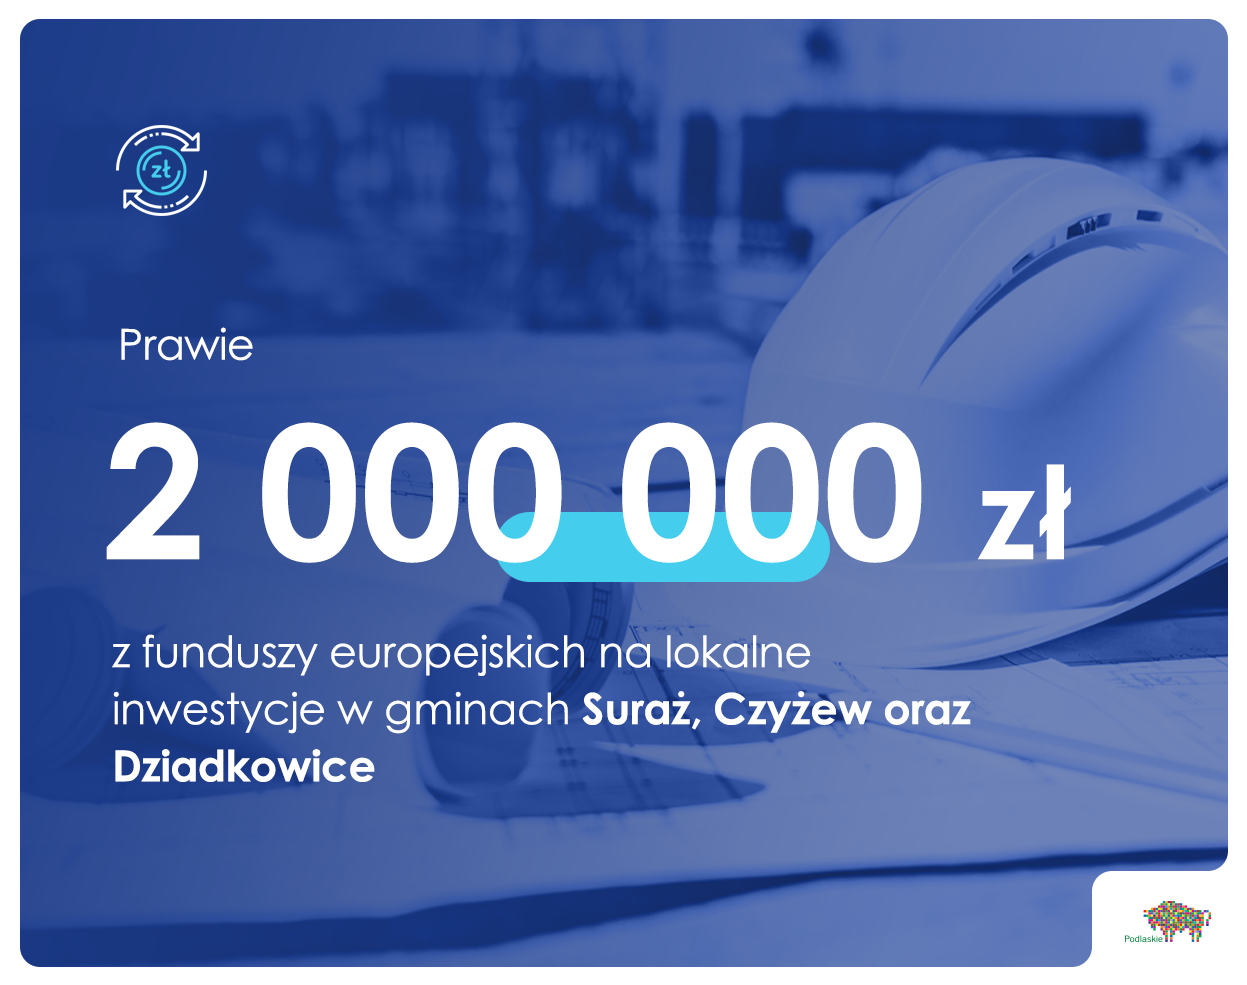 Grafika informująca o przekazaniu 2 mln zł z dotacji unijnych na lokalne inwestycje w gminach Suraż, Czyżew oraz Dziadkowice